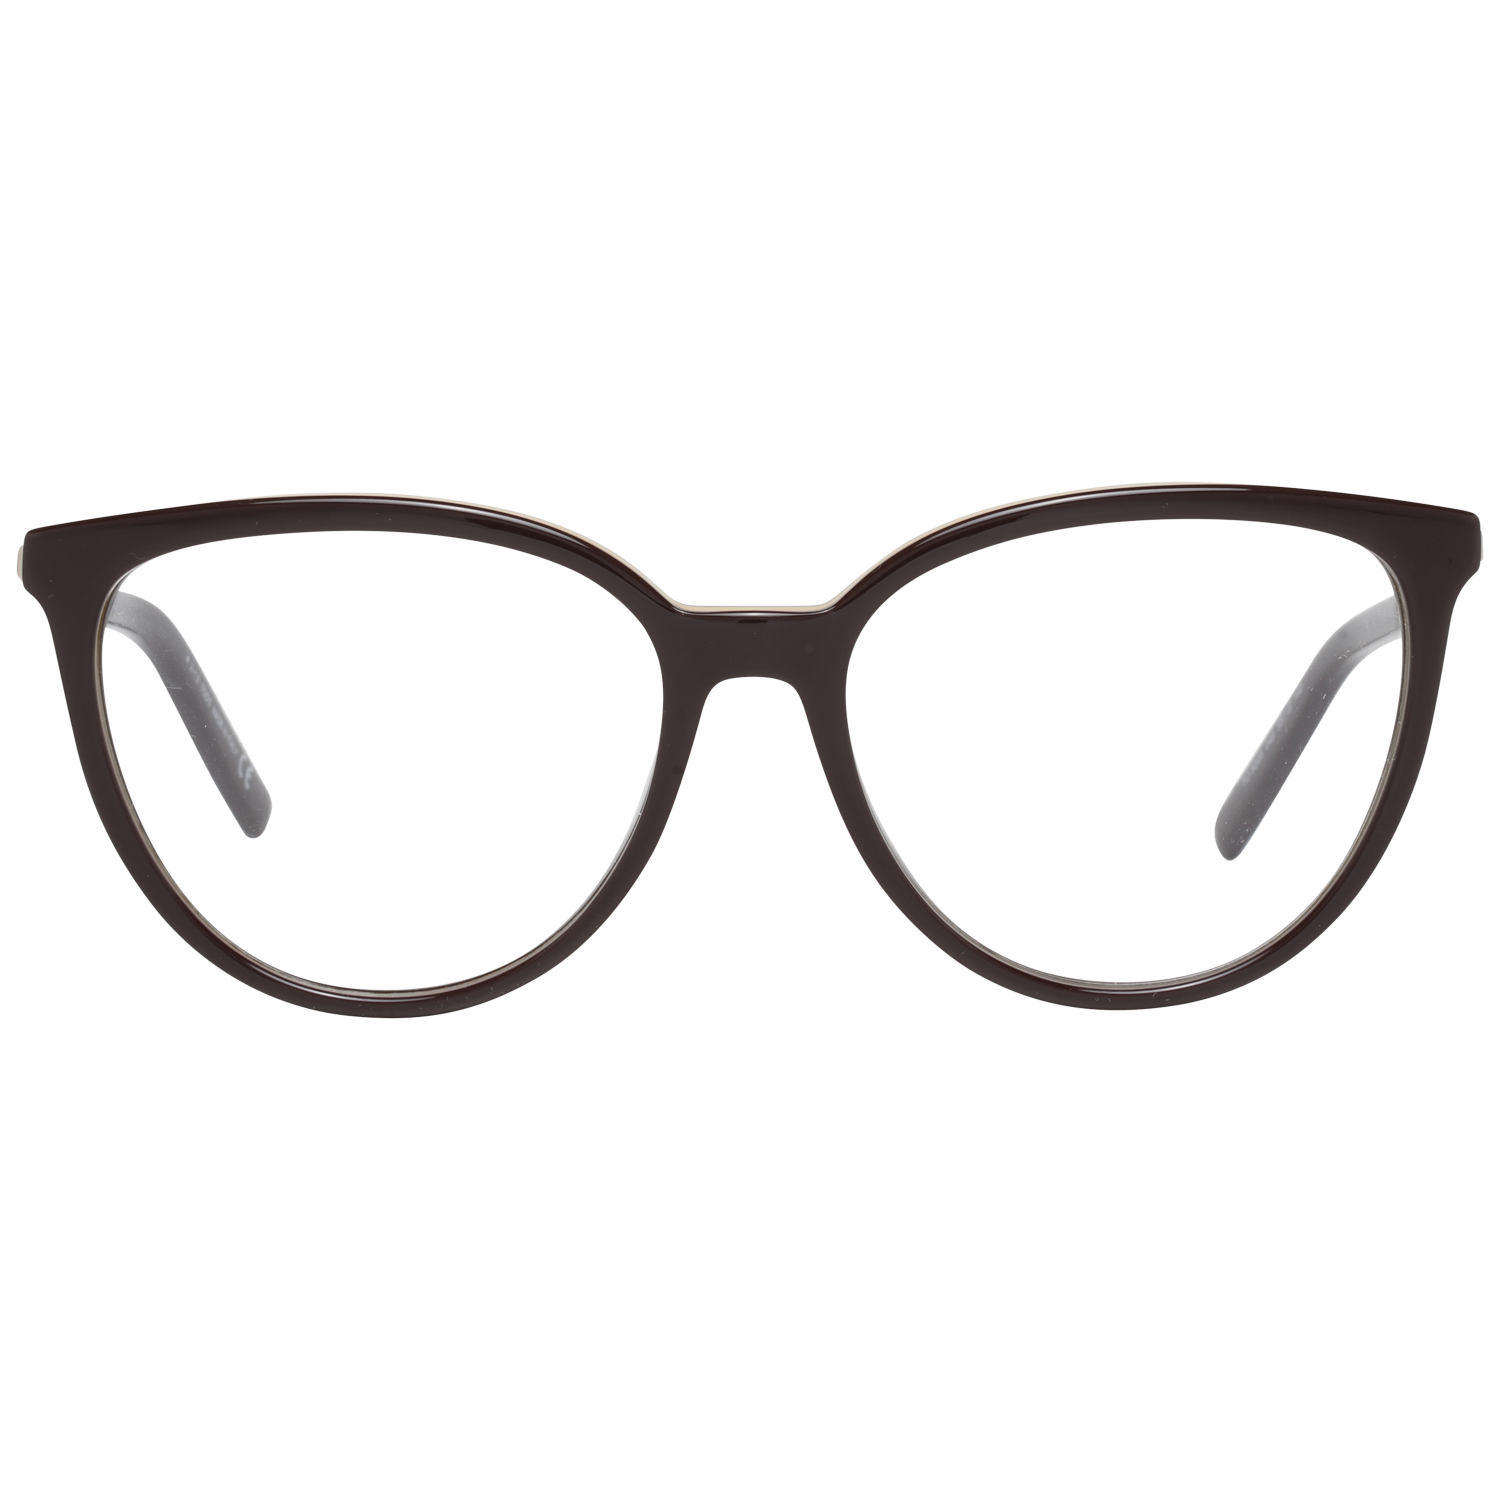 Tods Frames Tods Glasses Women's Brown Frames TO5208 048 55mm Eyeglasses Eyewear UK USA Australia 